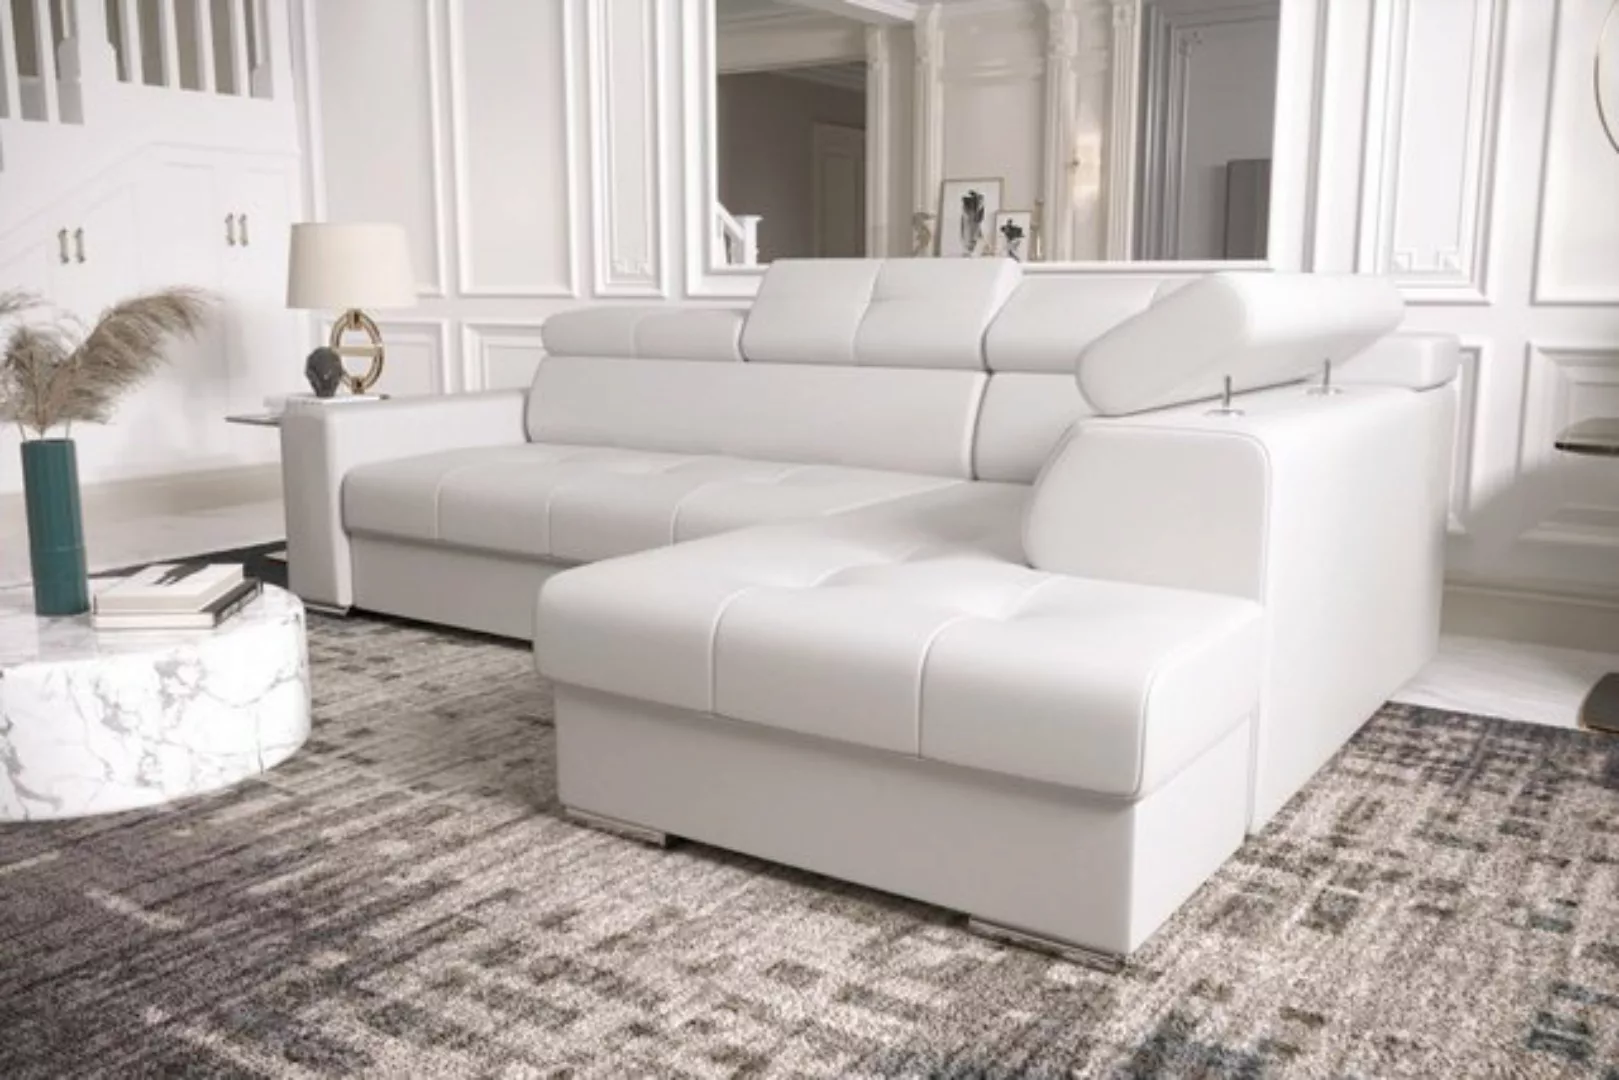 JVmoebel Ecksofa, Ecksofa L Form Couch Polsterung Wohnzimmer Couchen Sofas günstig online kaufen